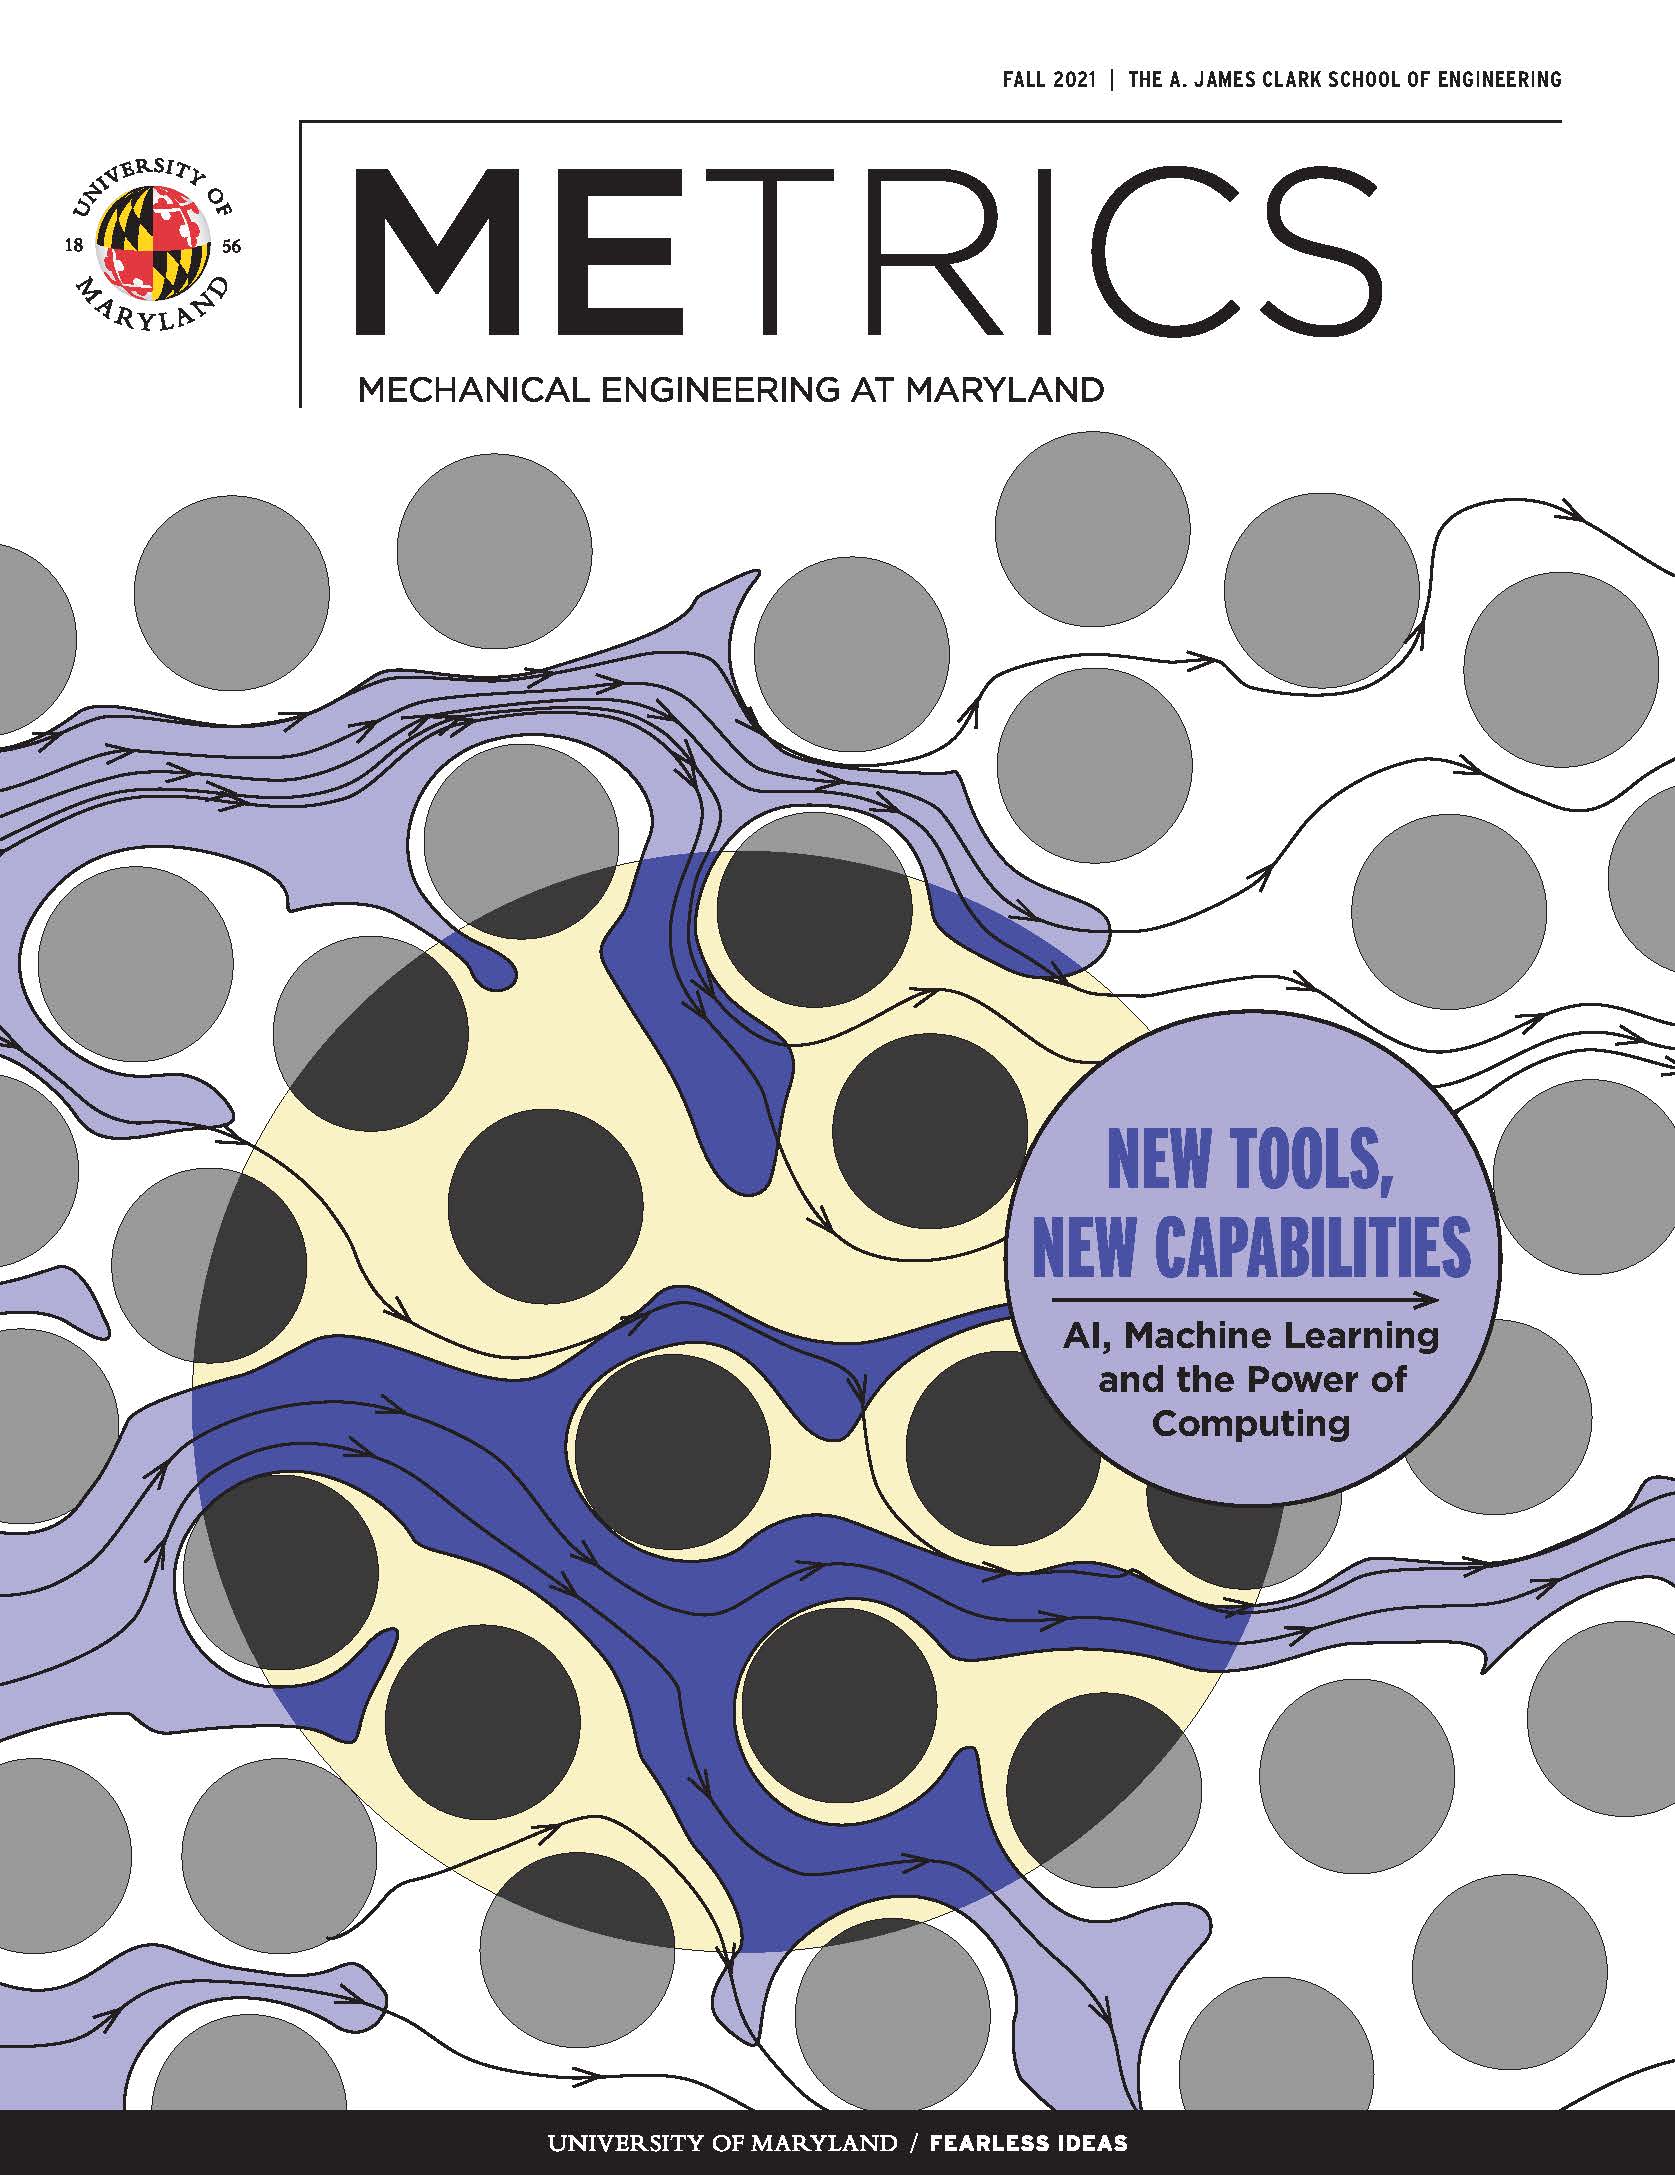 METRICS Magazine Cover Image